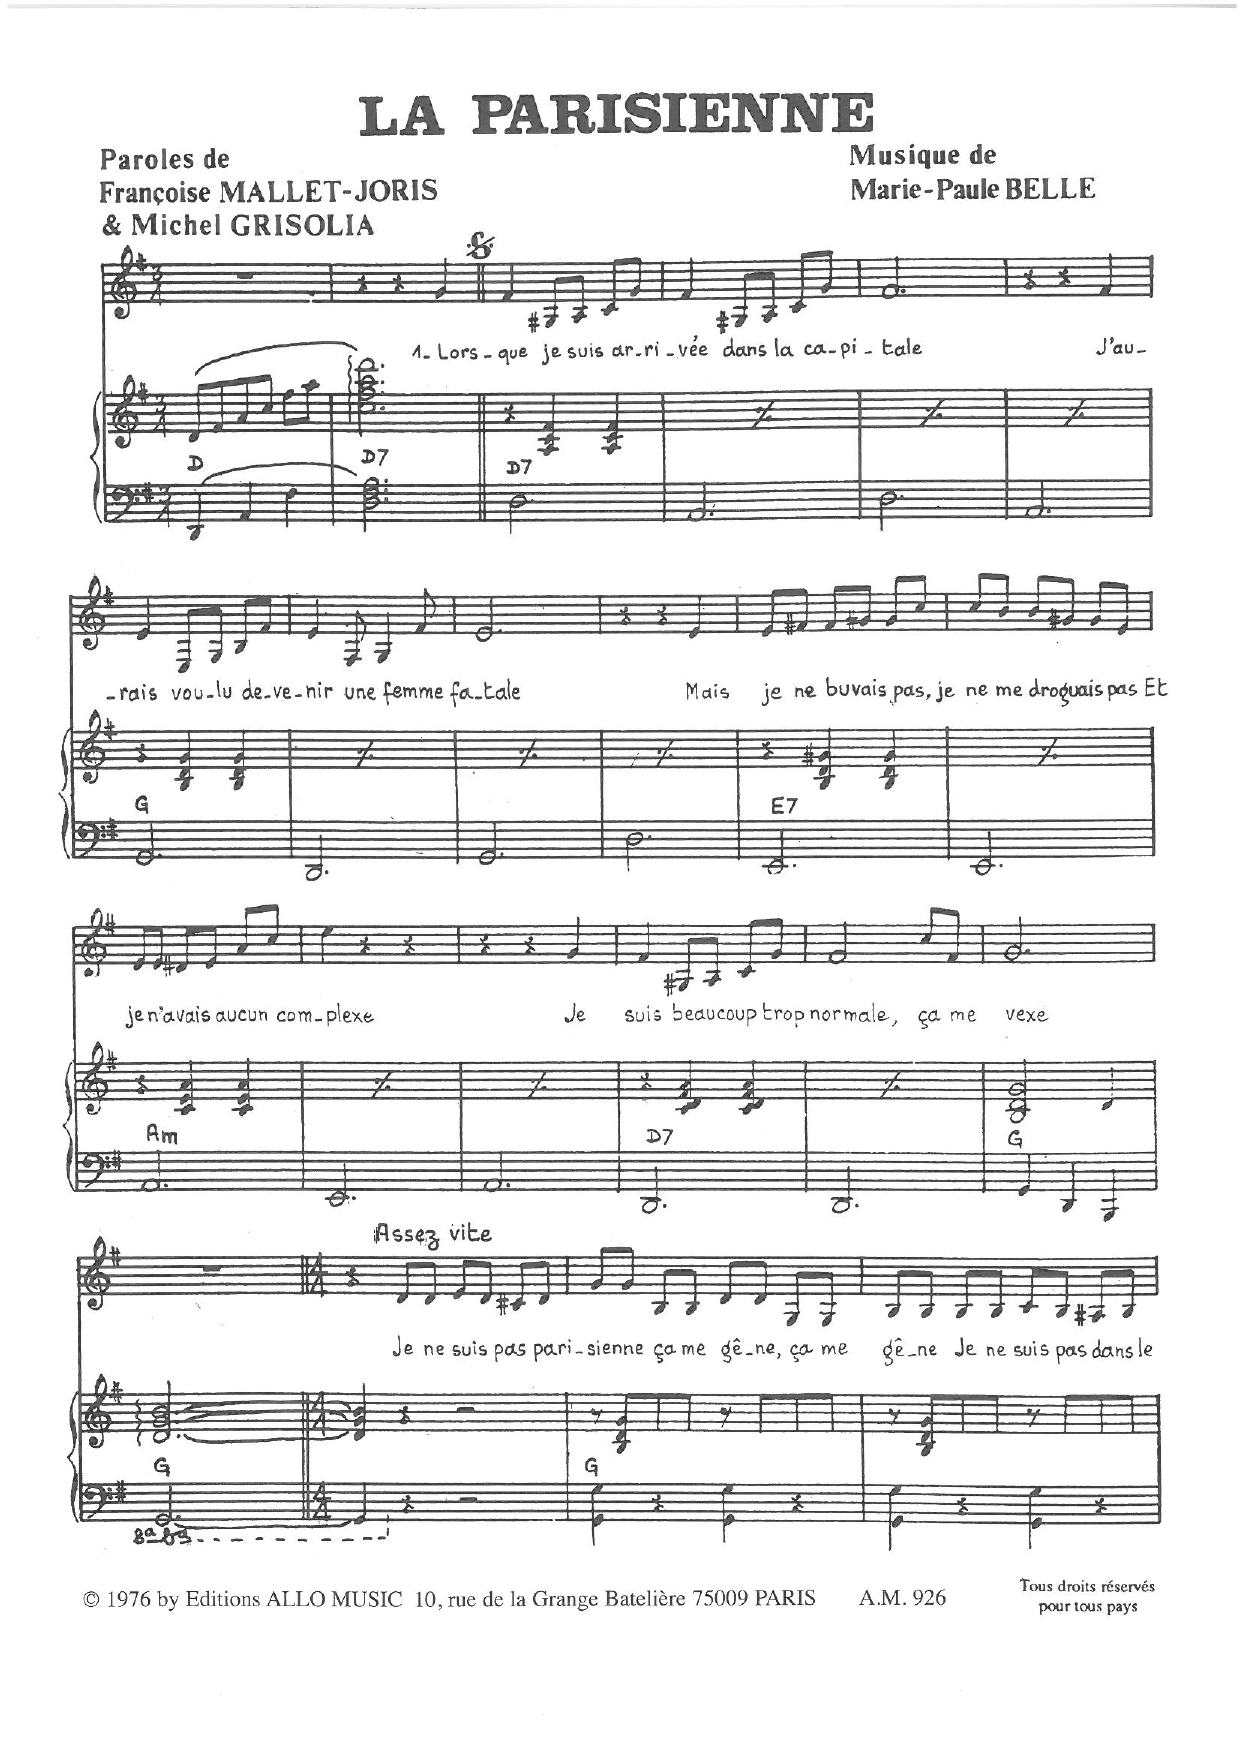 Michel Grisolia, Françoise Mallet-Joris and Marie Paule Belle La Parisienne sheet music notes and chords arranged for Piano & Vocal